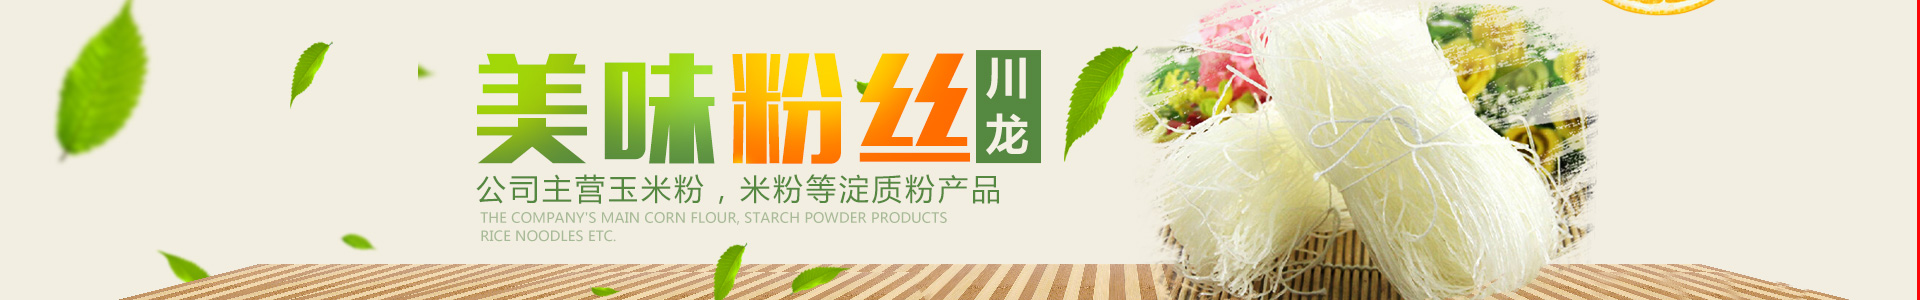 懷化市川龍食品有限公司—湖南省食品收購|懷化市玉米粉加工|鶴城區米粉銷售